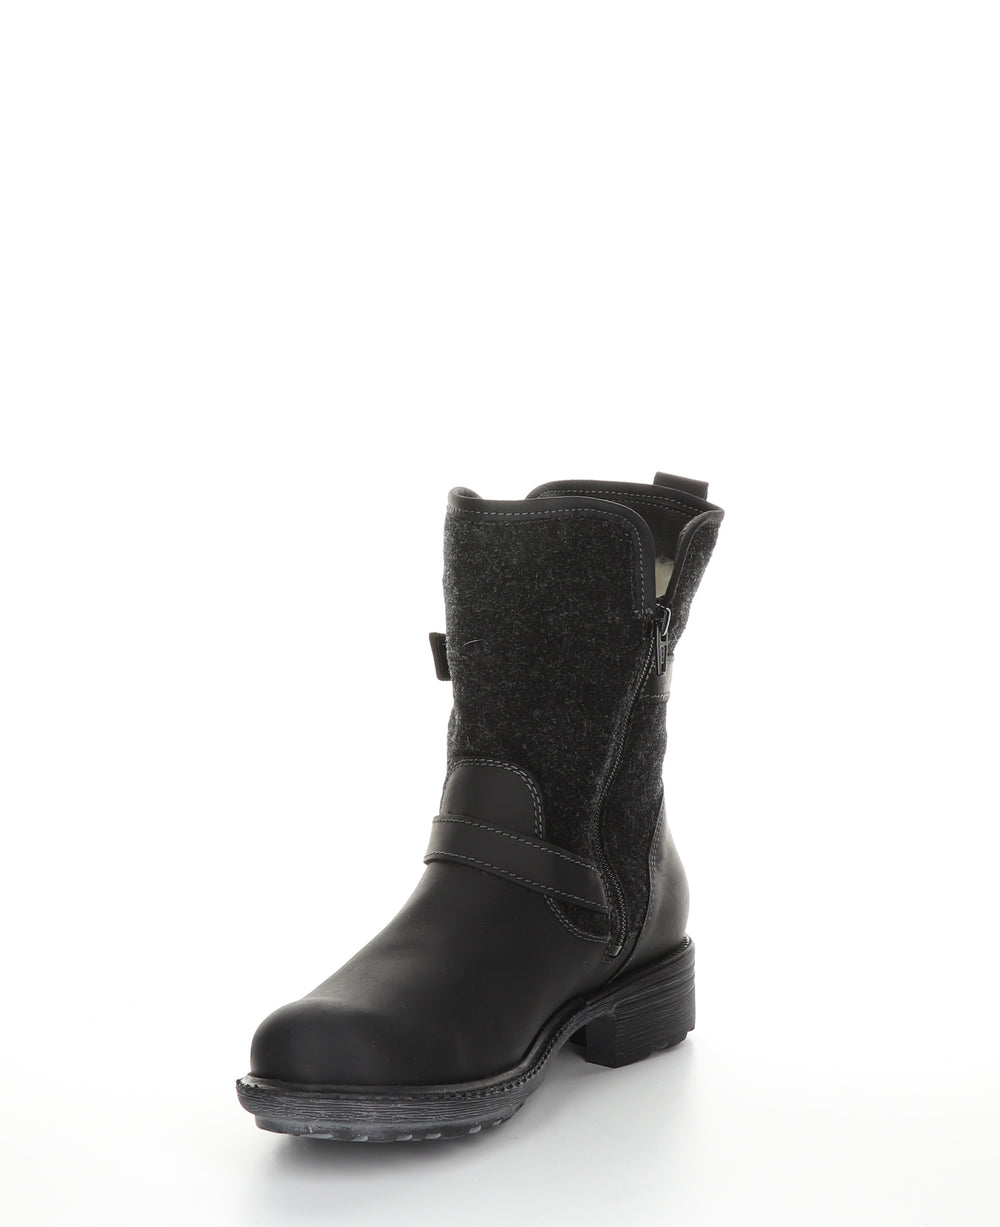 SAINT Black Zip Up Boots|SAINT Bottes avec Fermeture Zippée in Noir